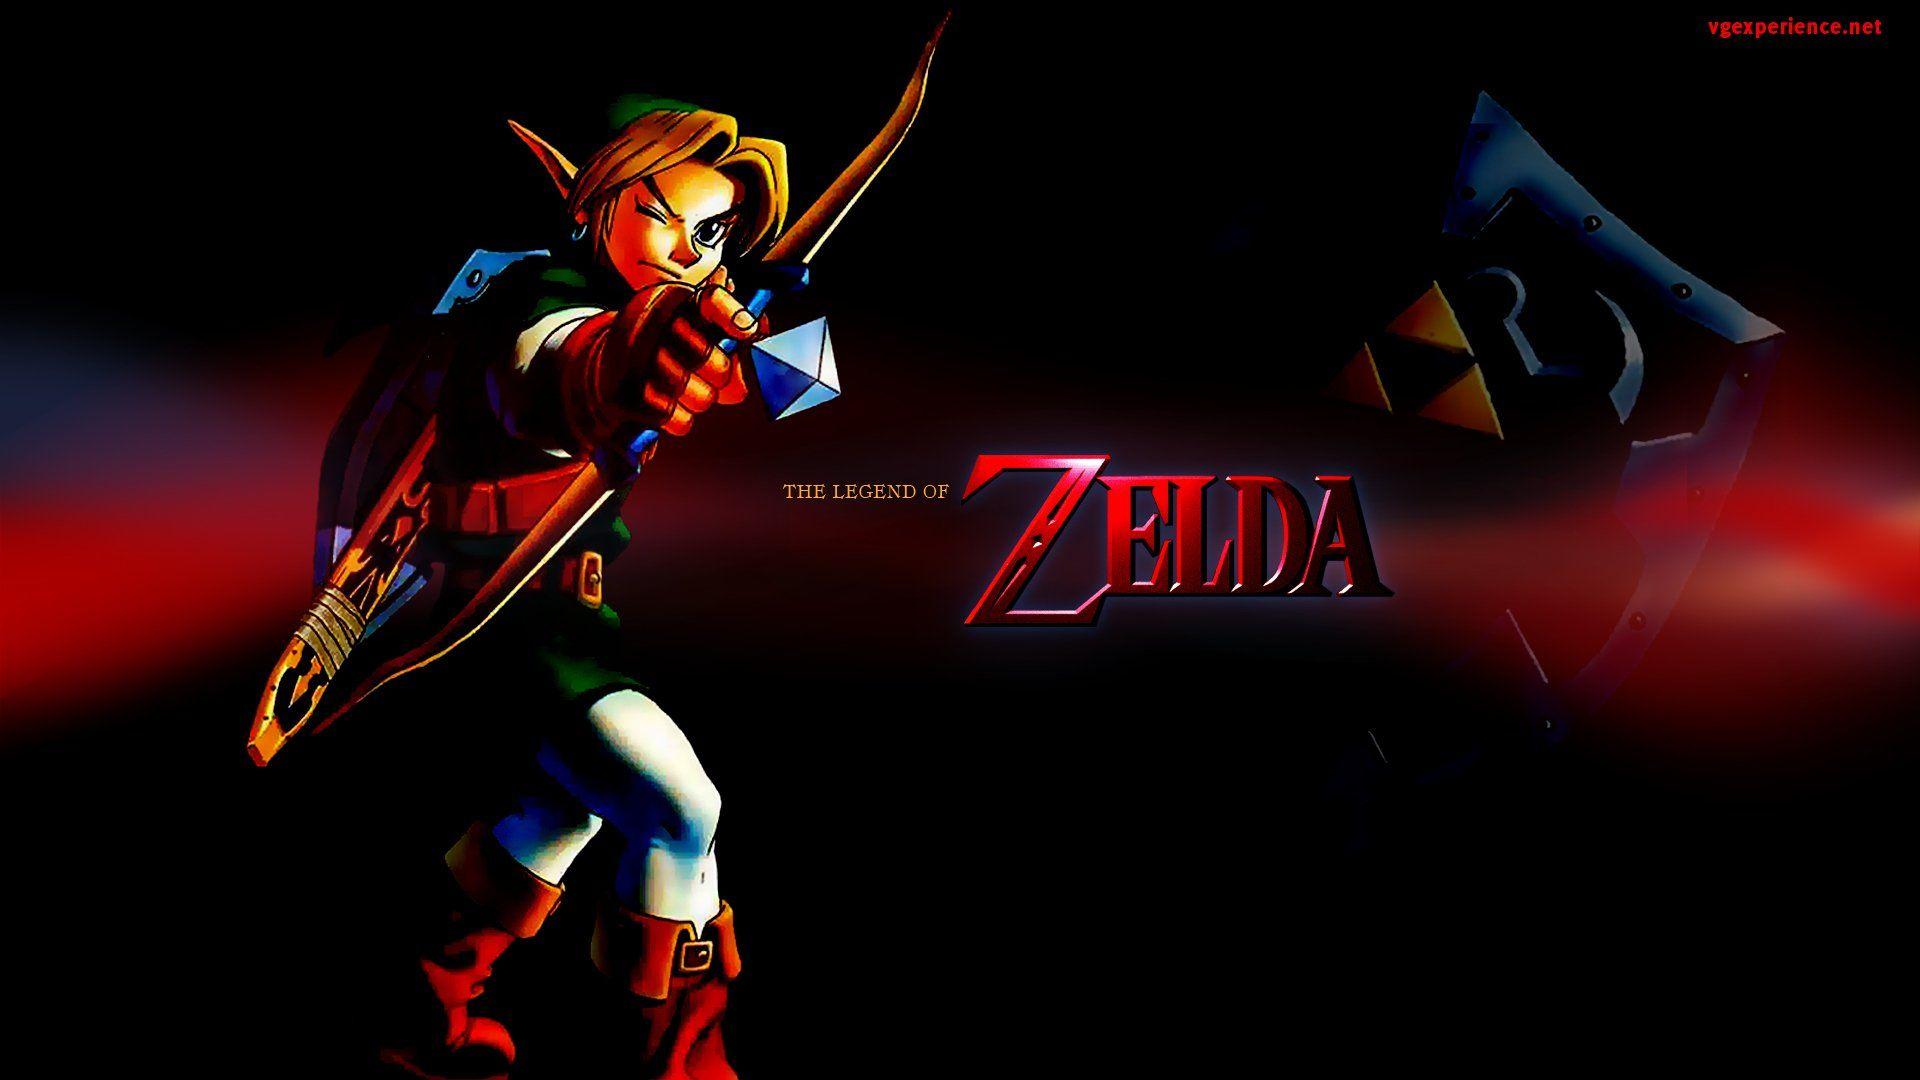 The Legend Of Zelda Ocarina Of Time Computer Wallpapers, Desktop